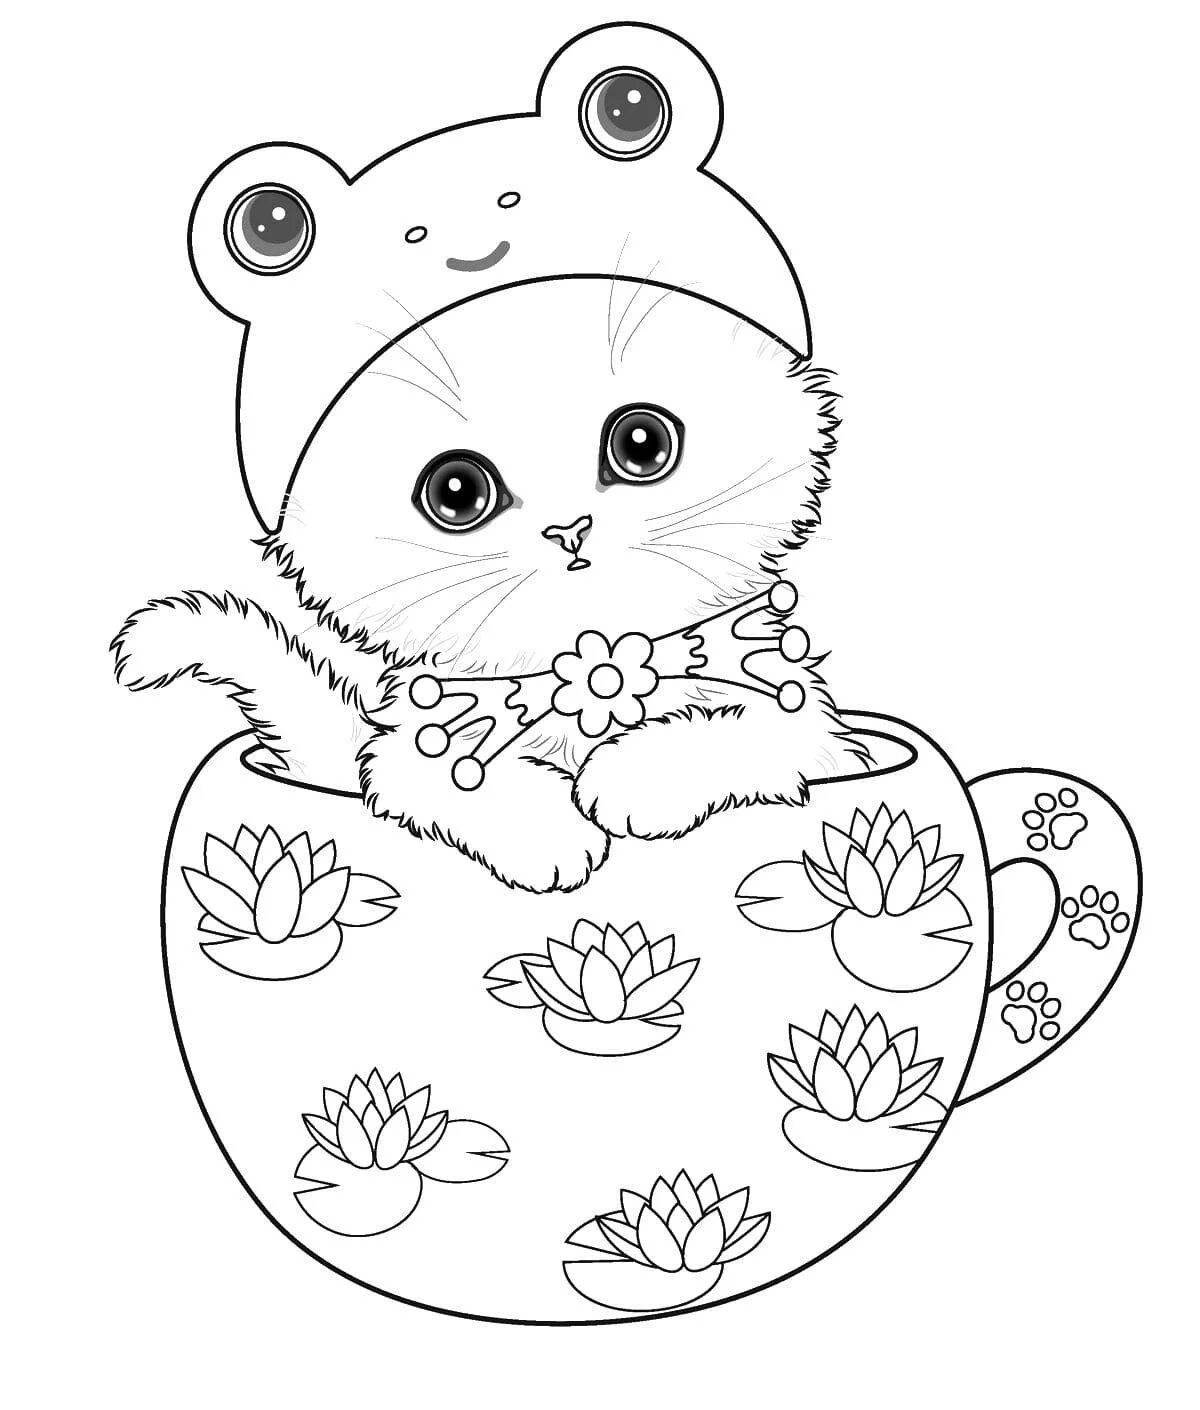 Раскраска Бирманская кошка | Раскраски кошек. Рисунки кошек, картинки кошек